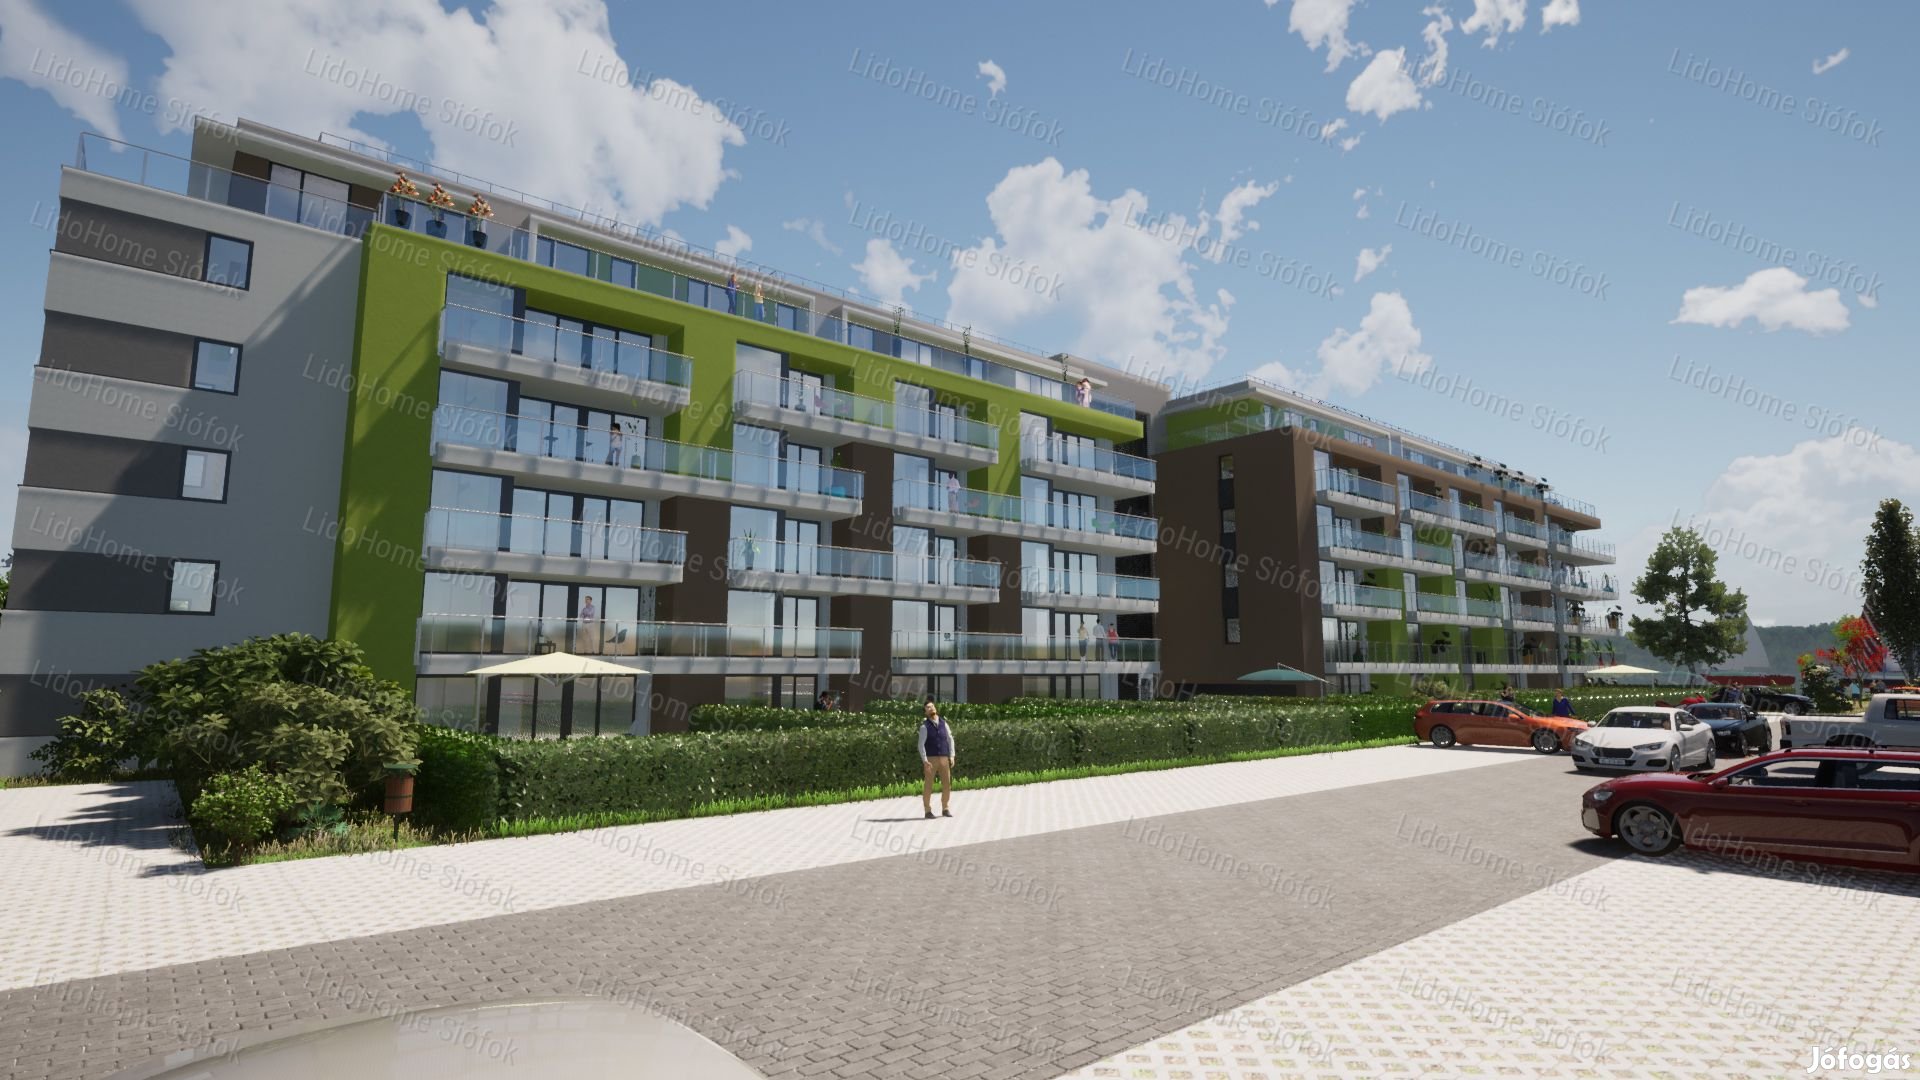 Új építésű, panorámás lakások a Balaton-parton